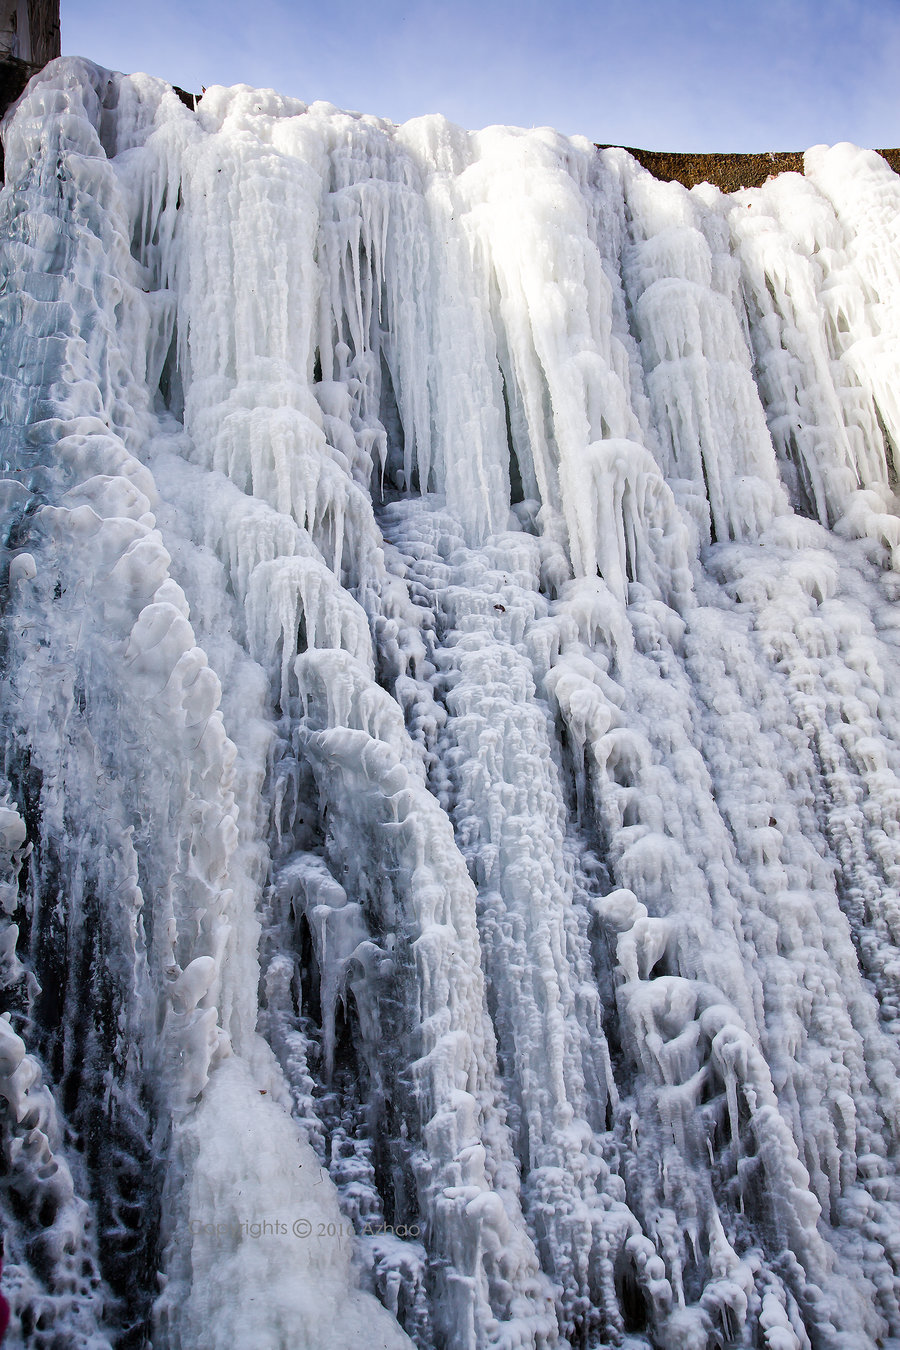 石嘴山白芨沟冰瀑图片